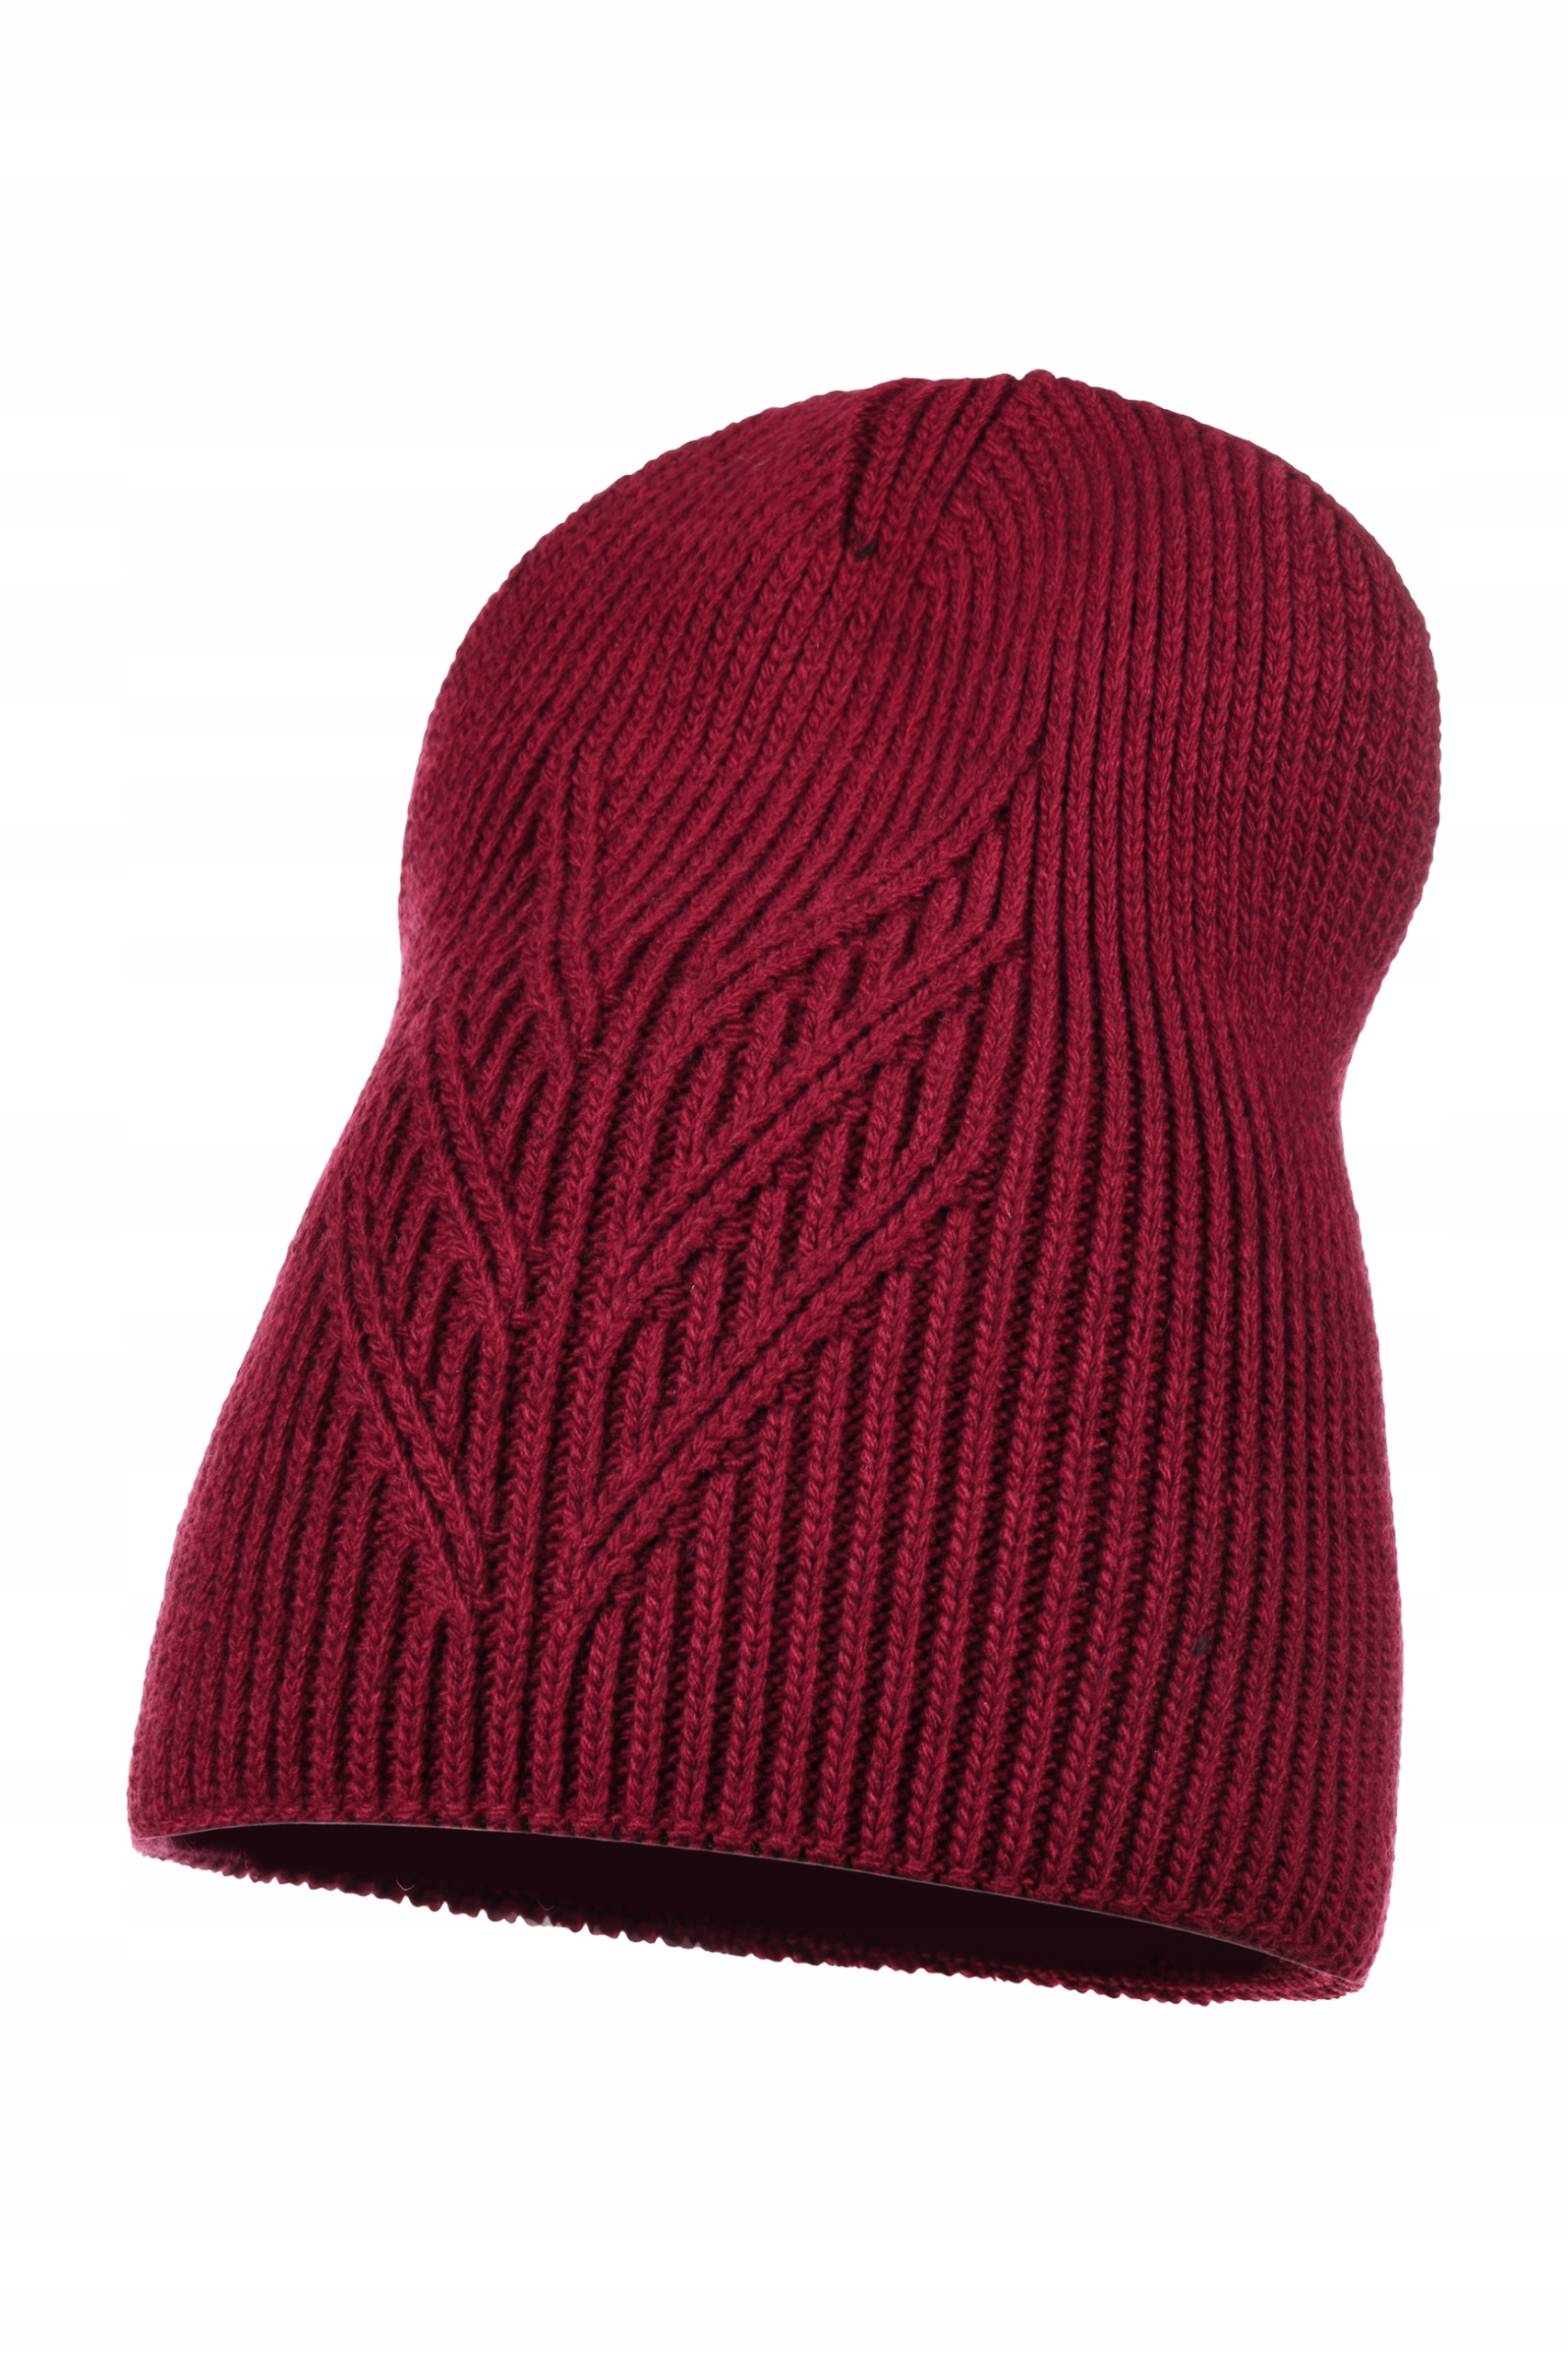 Женская шапка бини осень зима Майка код производителя D - 5 бордовый